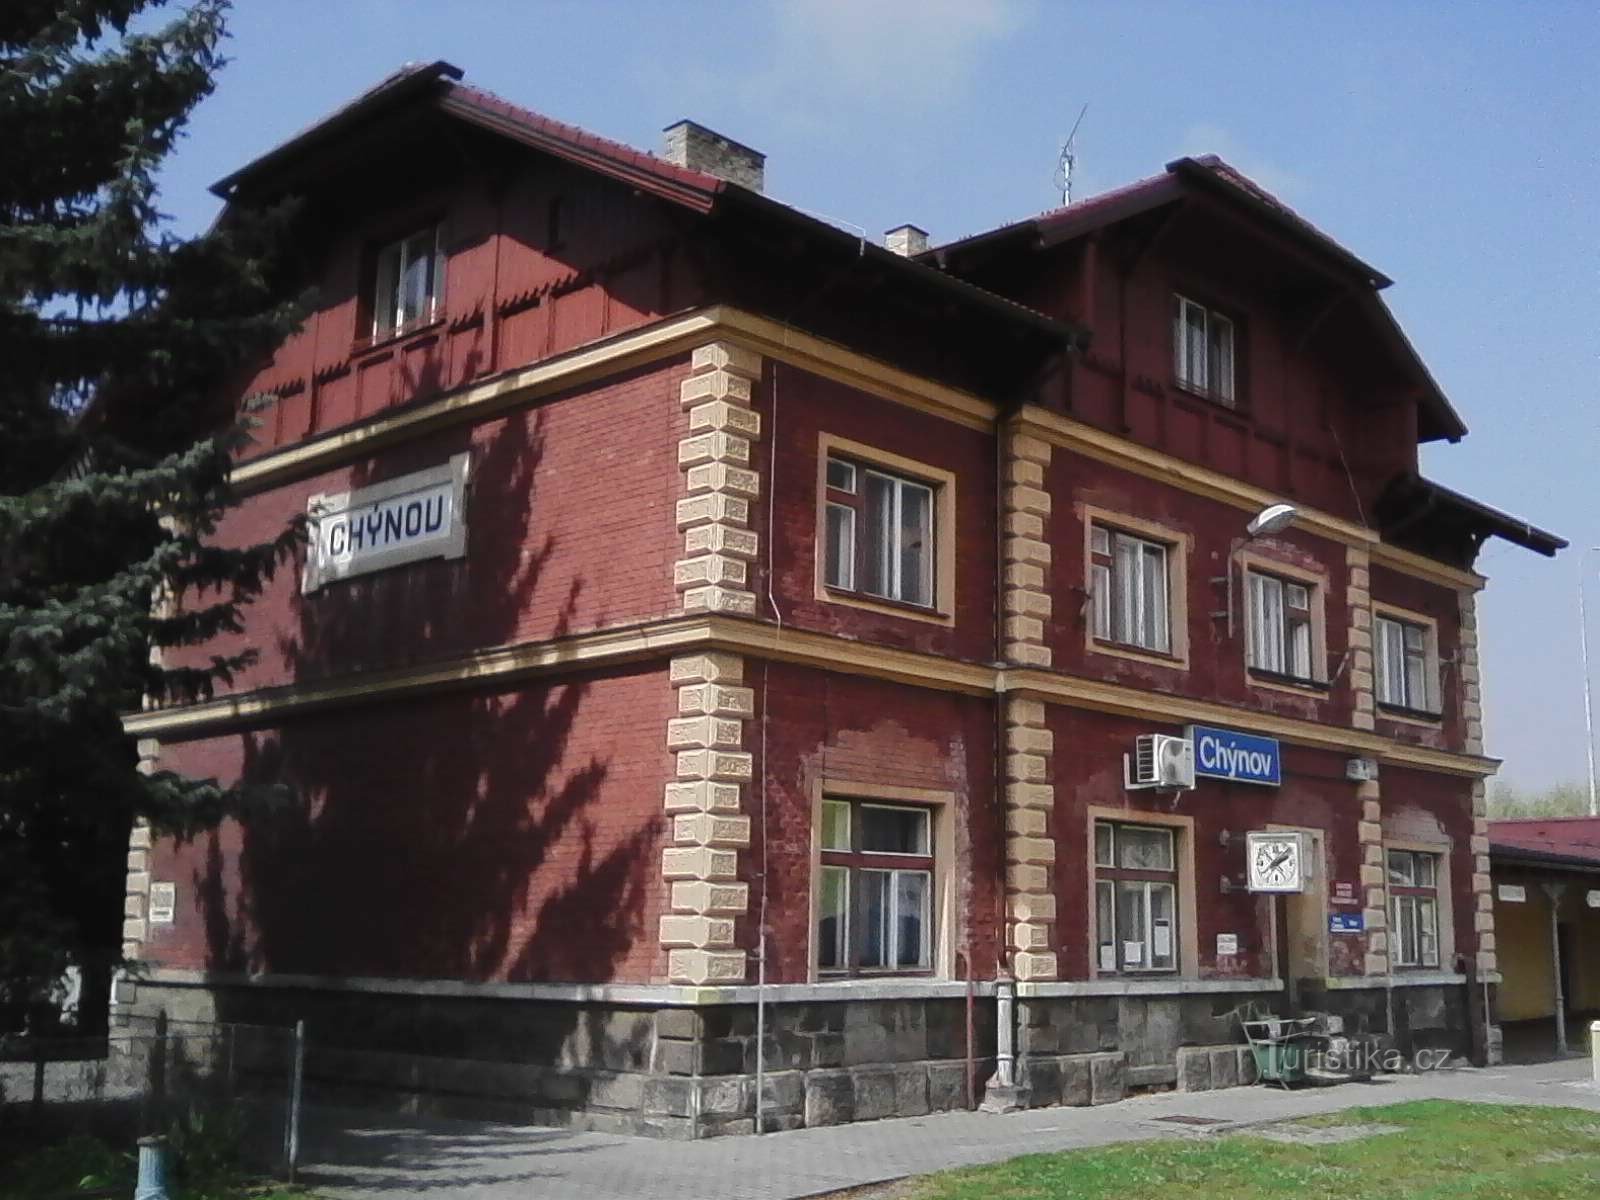 1. 224 番線の Chýnov 駅、Tábor - Horní Cerekev、69 km。